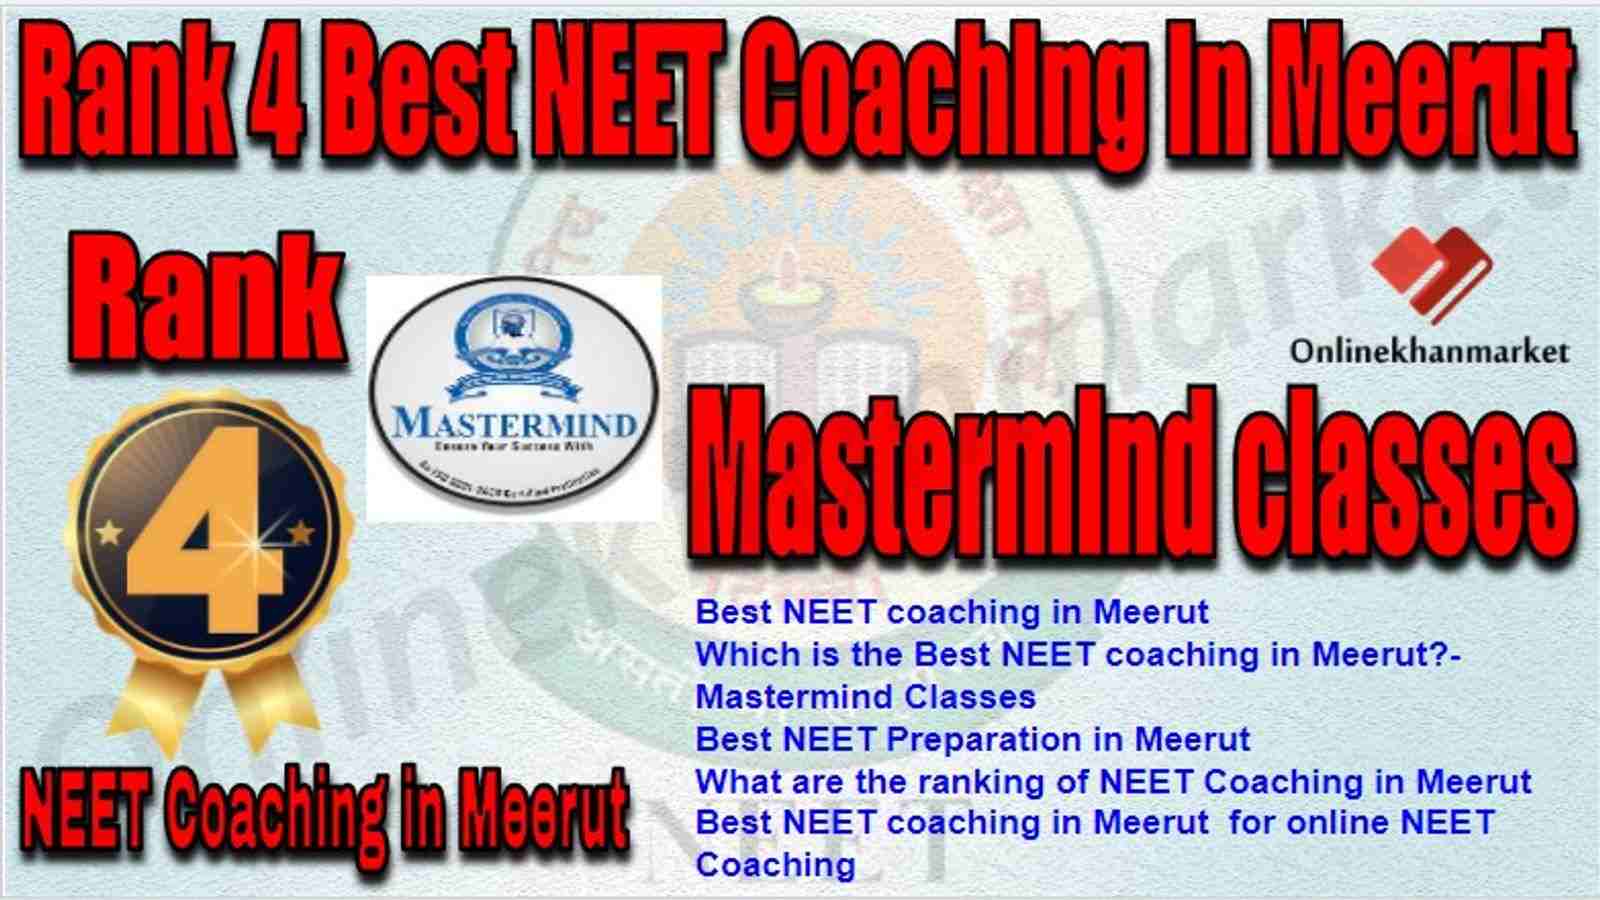 Rank 4 Best NEET Coaching meerut